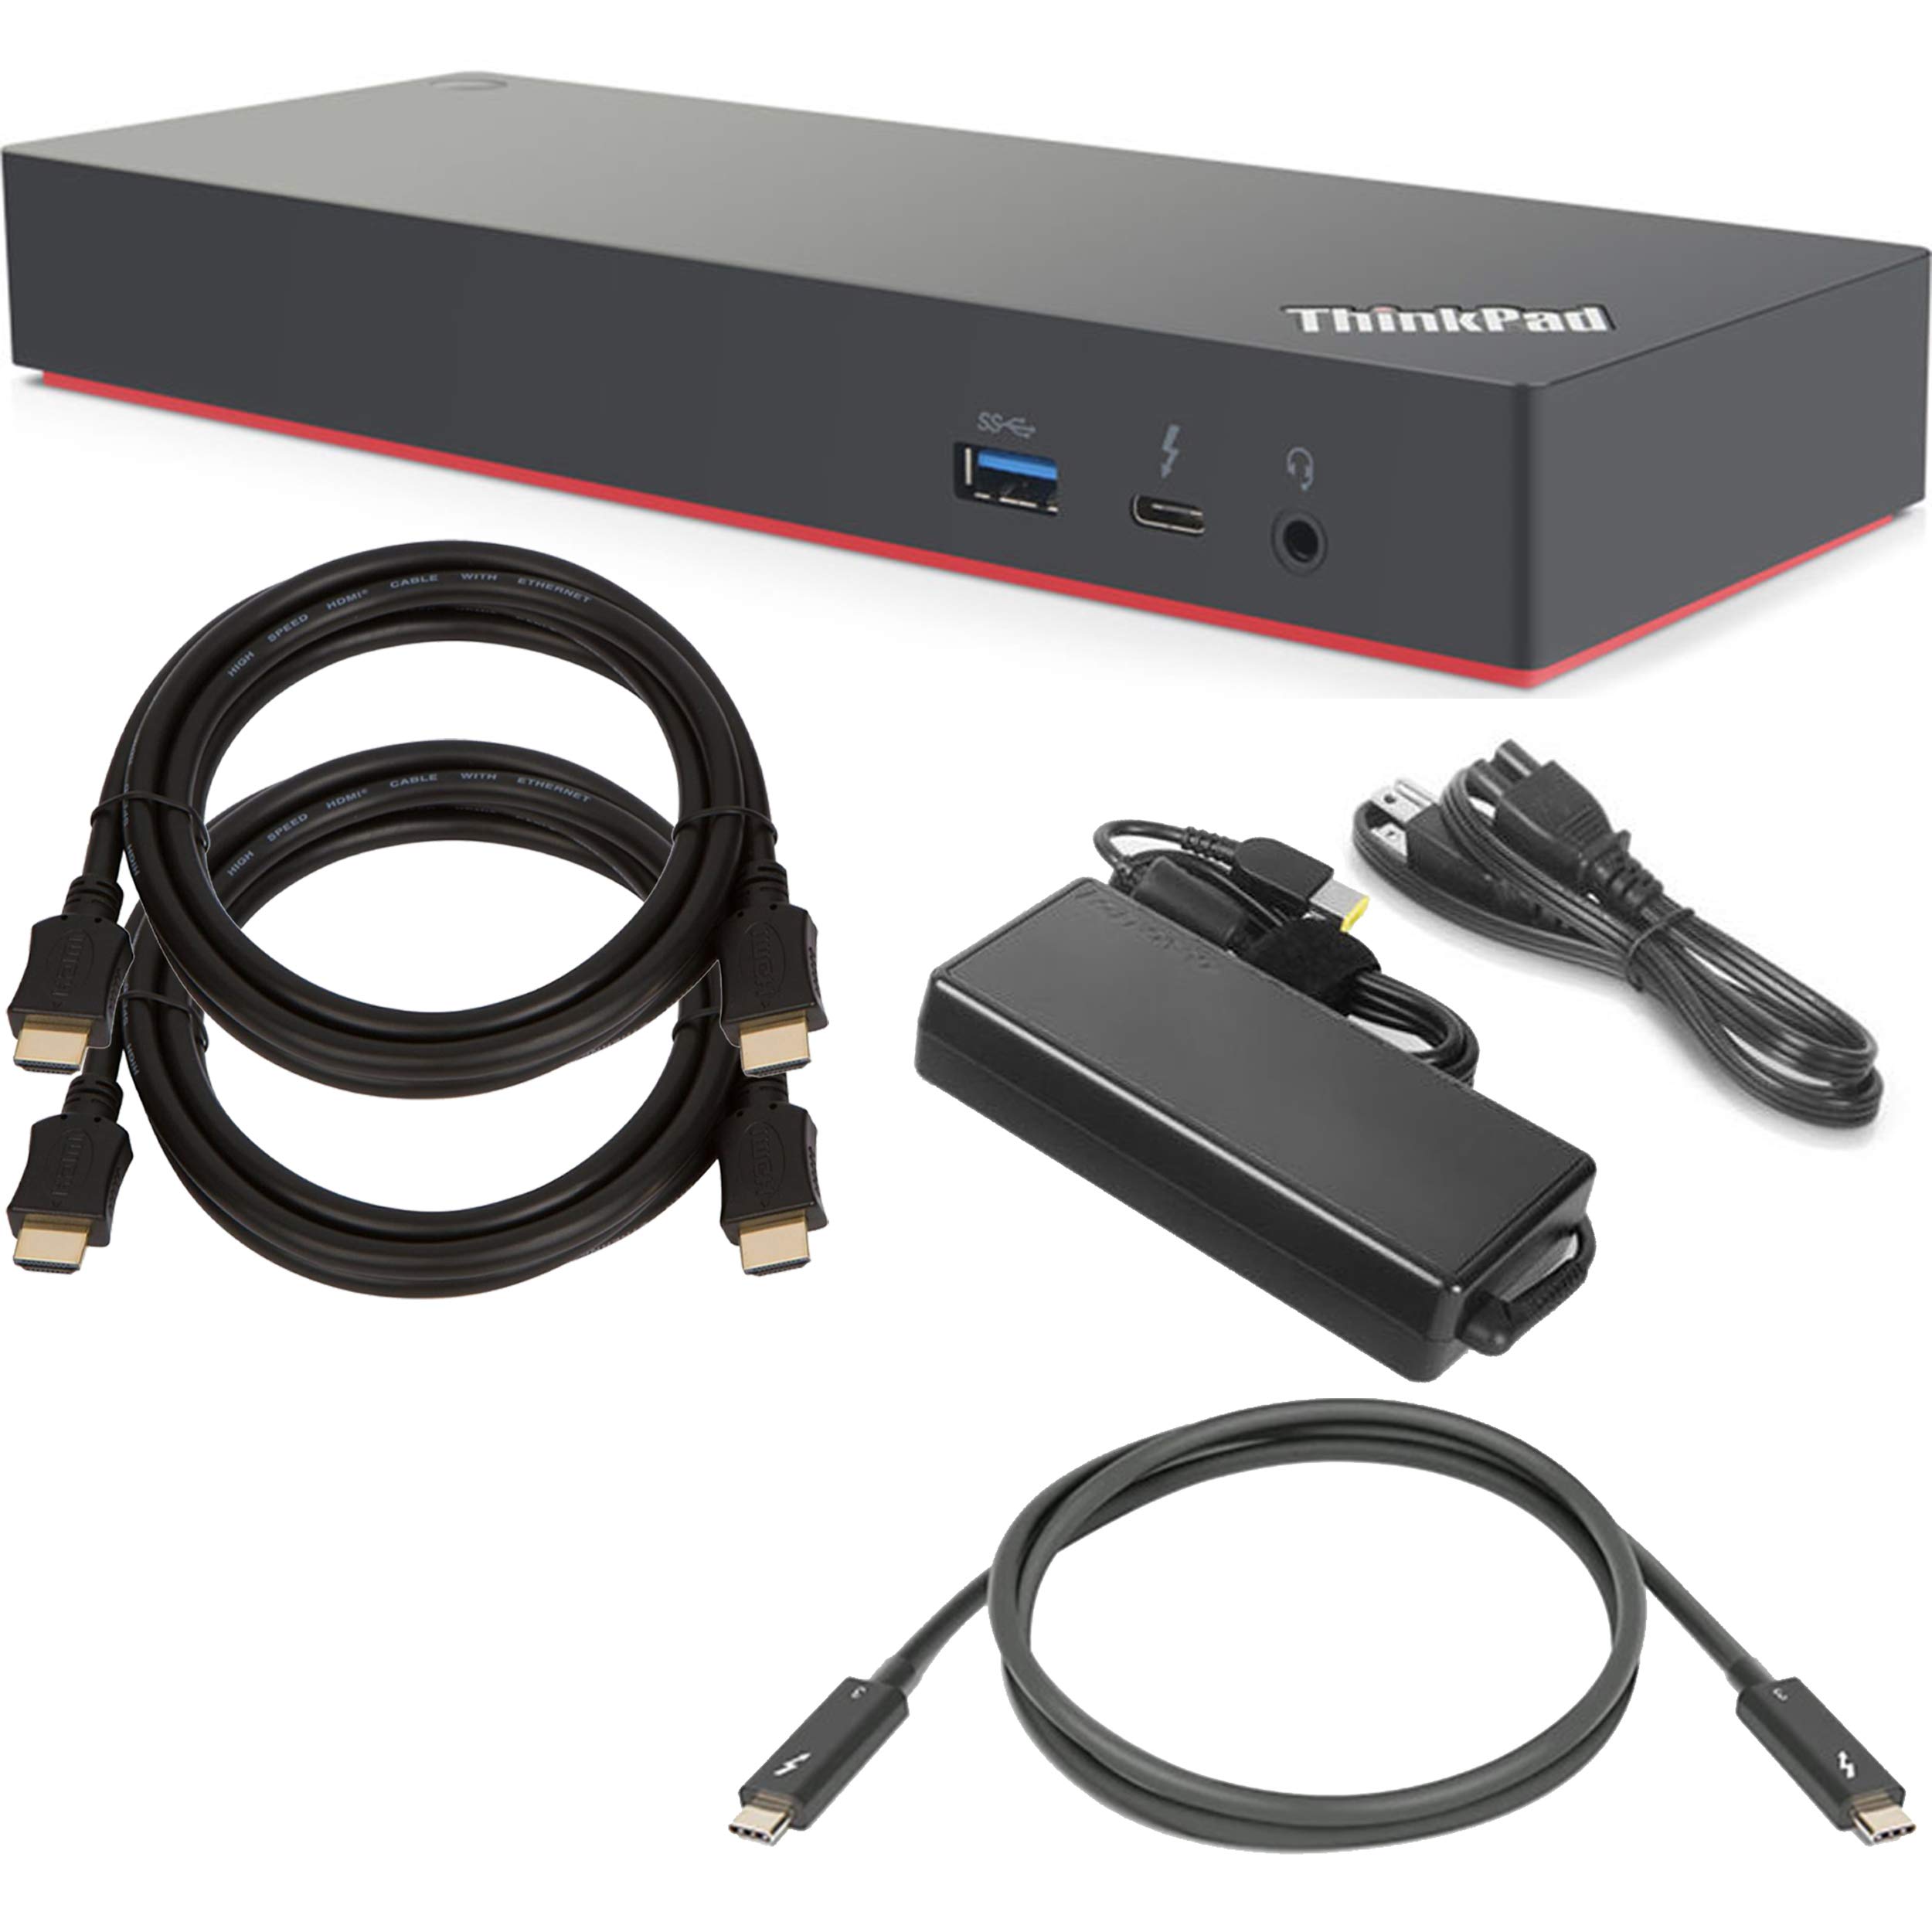 ShopSmart Deals Lenovo ThinkPad Thunderbolt 3 Dock Gen 2 Docking Station (135 وات) (40AN0135US) + حزمة بدء تشغيل SSD